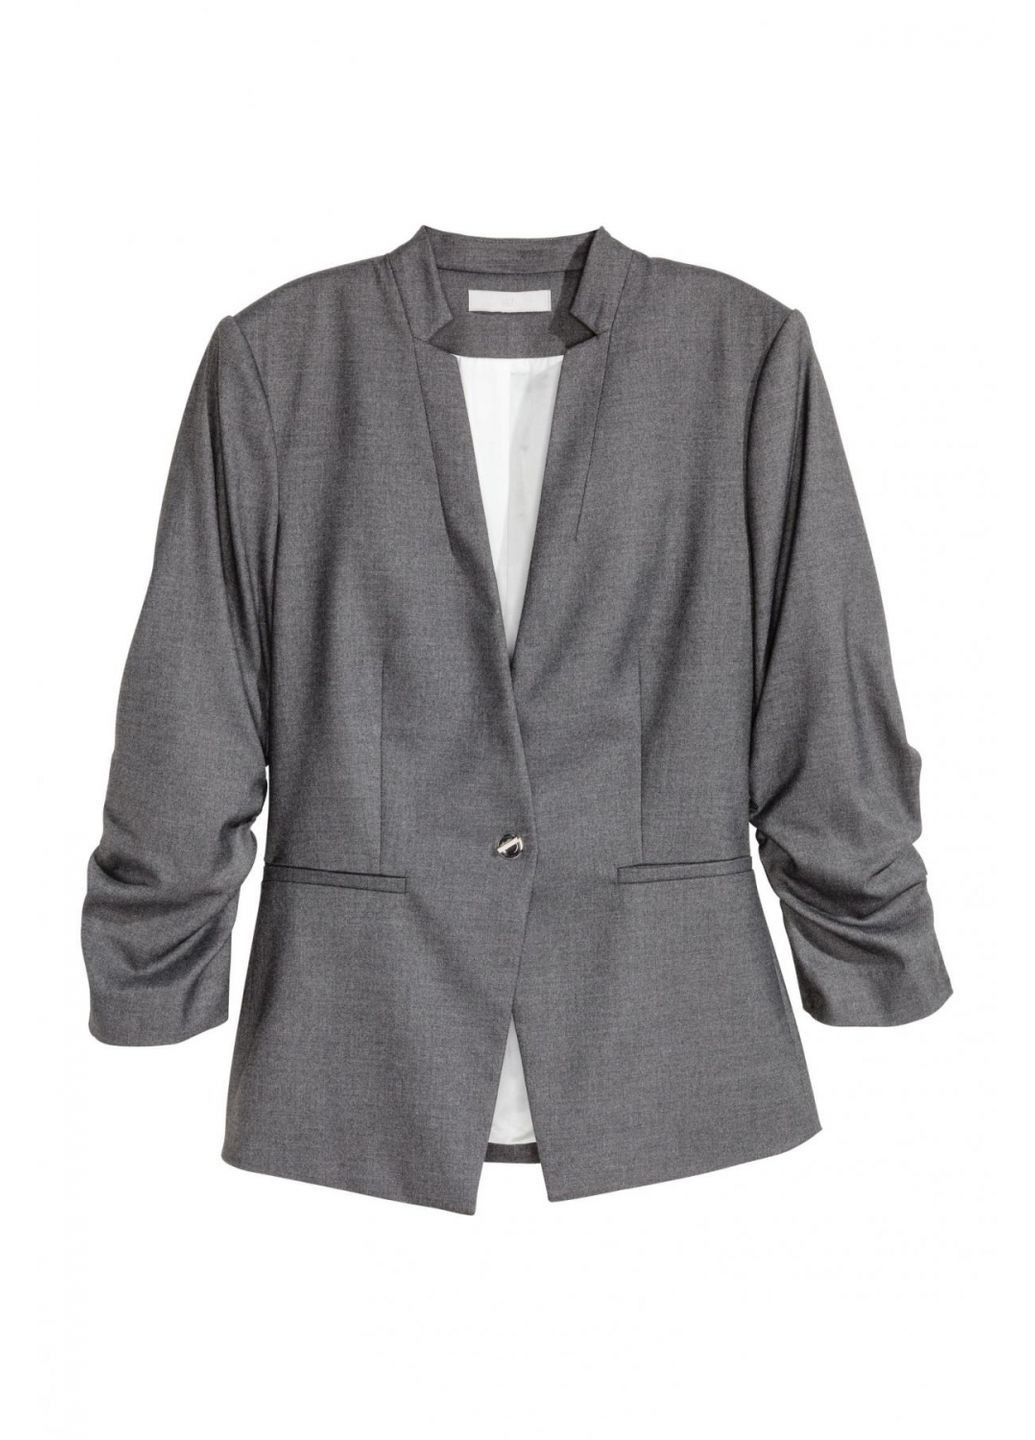 Серый женский пиджак рукав 3/4 для женщины 0427969-4 H&M в клеточку - демисезонный